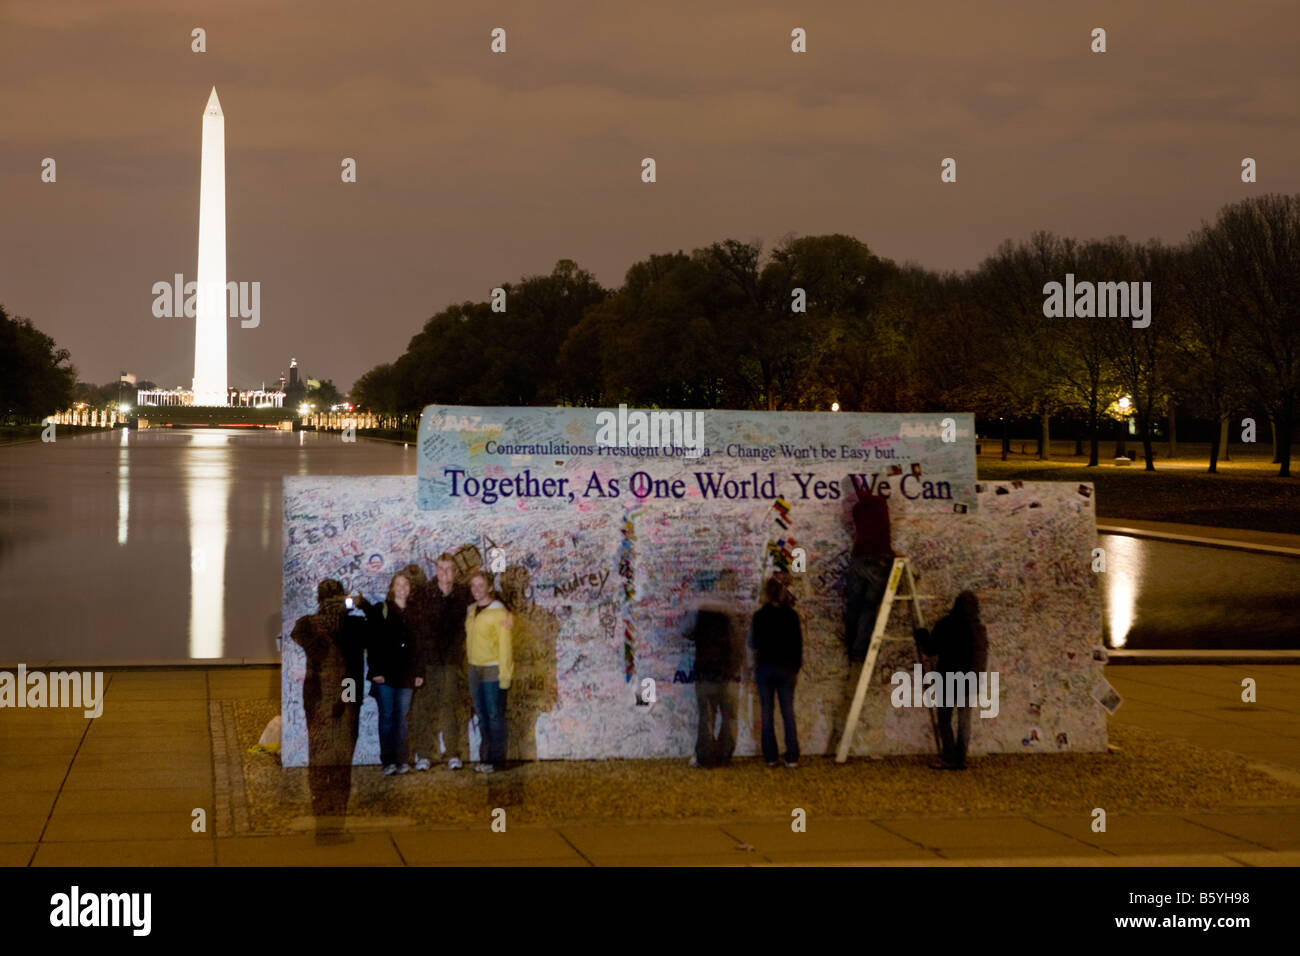 Washington Monument plus Yes We Can billboard Washington D.C. Stock Photo